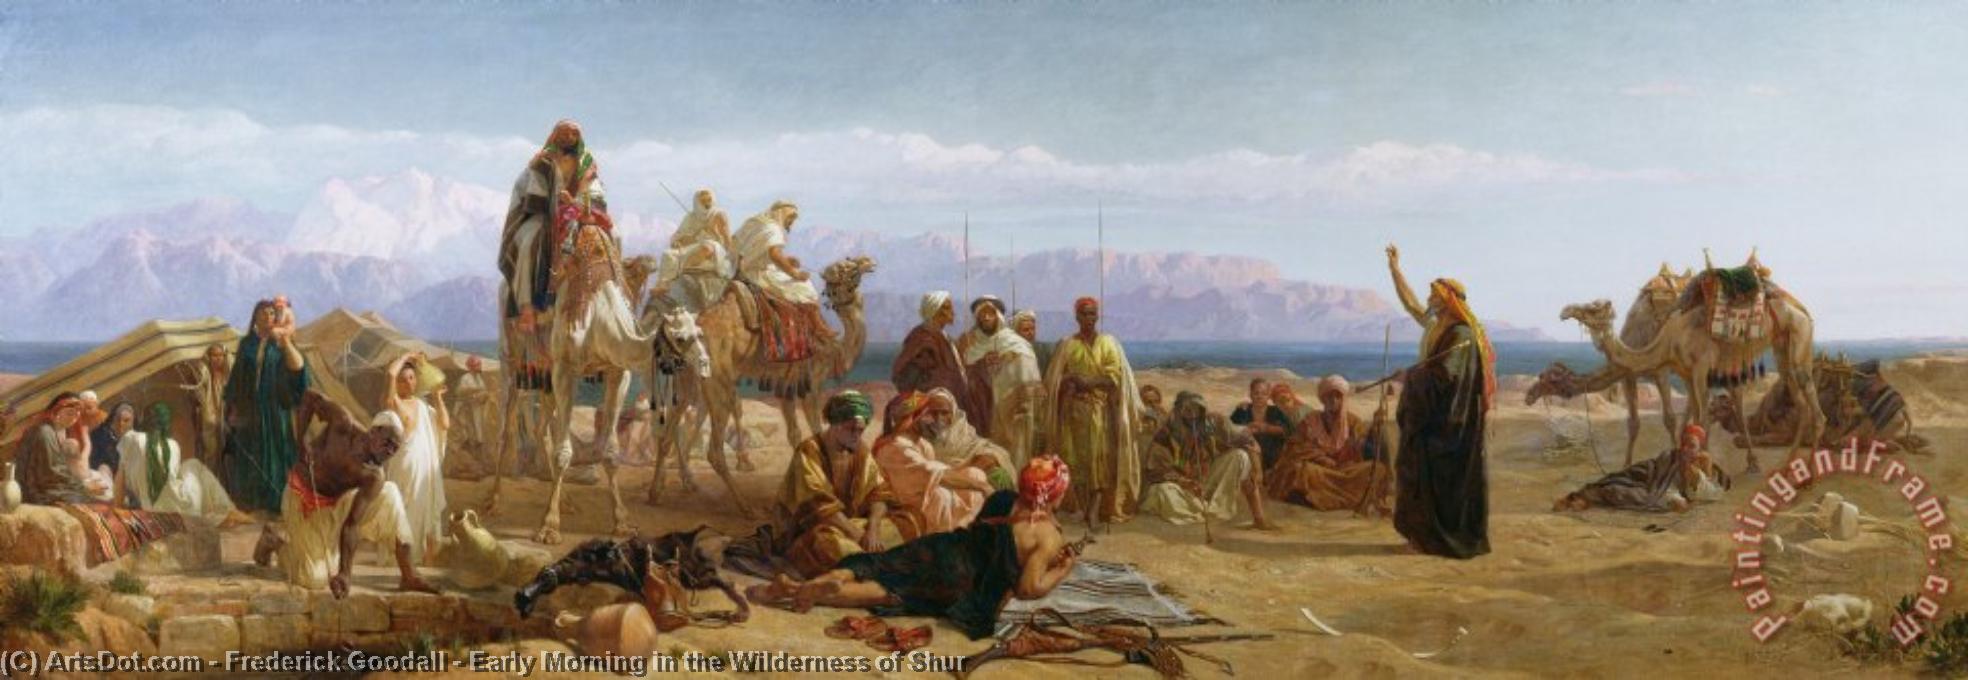 Скитание евреев по пустыне. Фредерик Гудолл. Фредерик Гудолл - арабы в пустыне 1871.